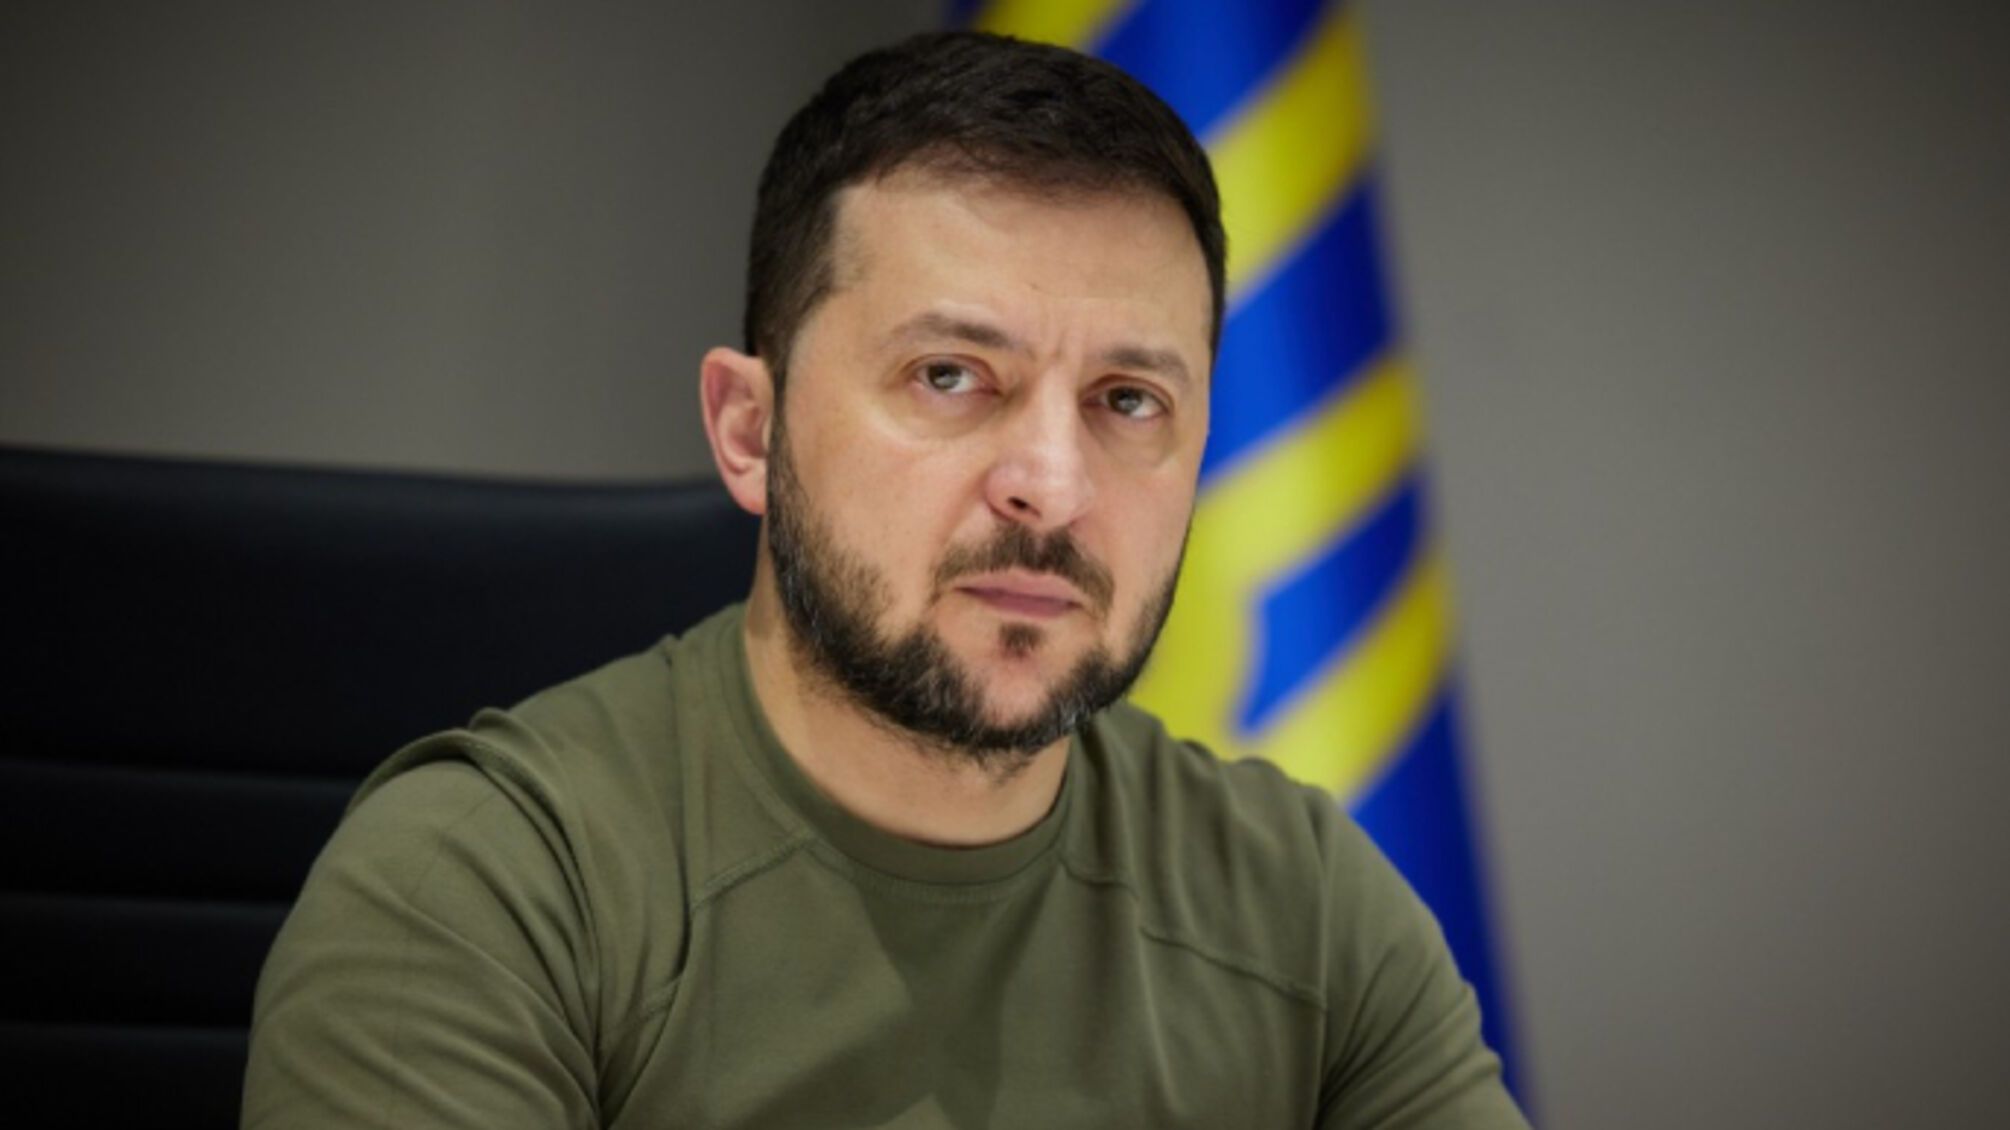 Гральний бізнес в Україні — під санкціями: Зеленський пояснив нові обмеження